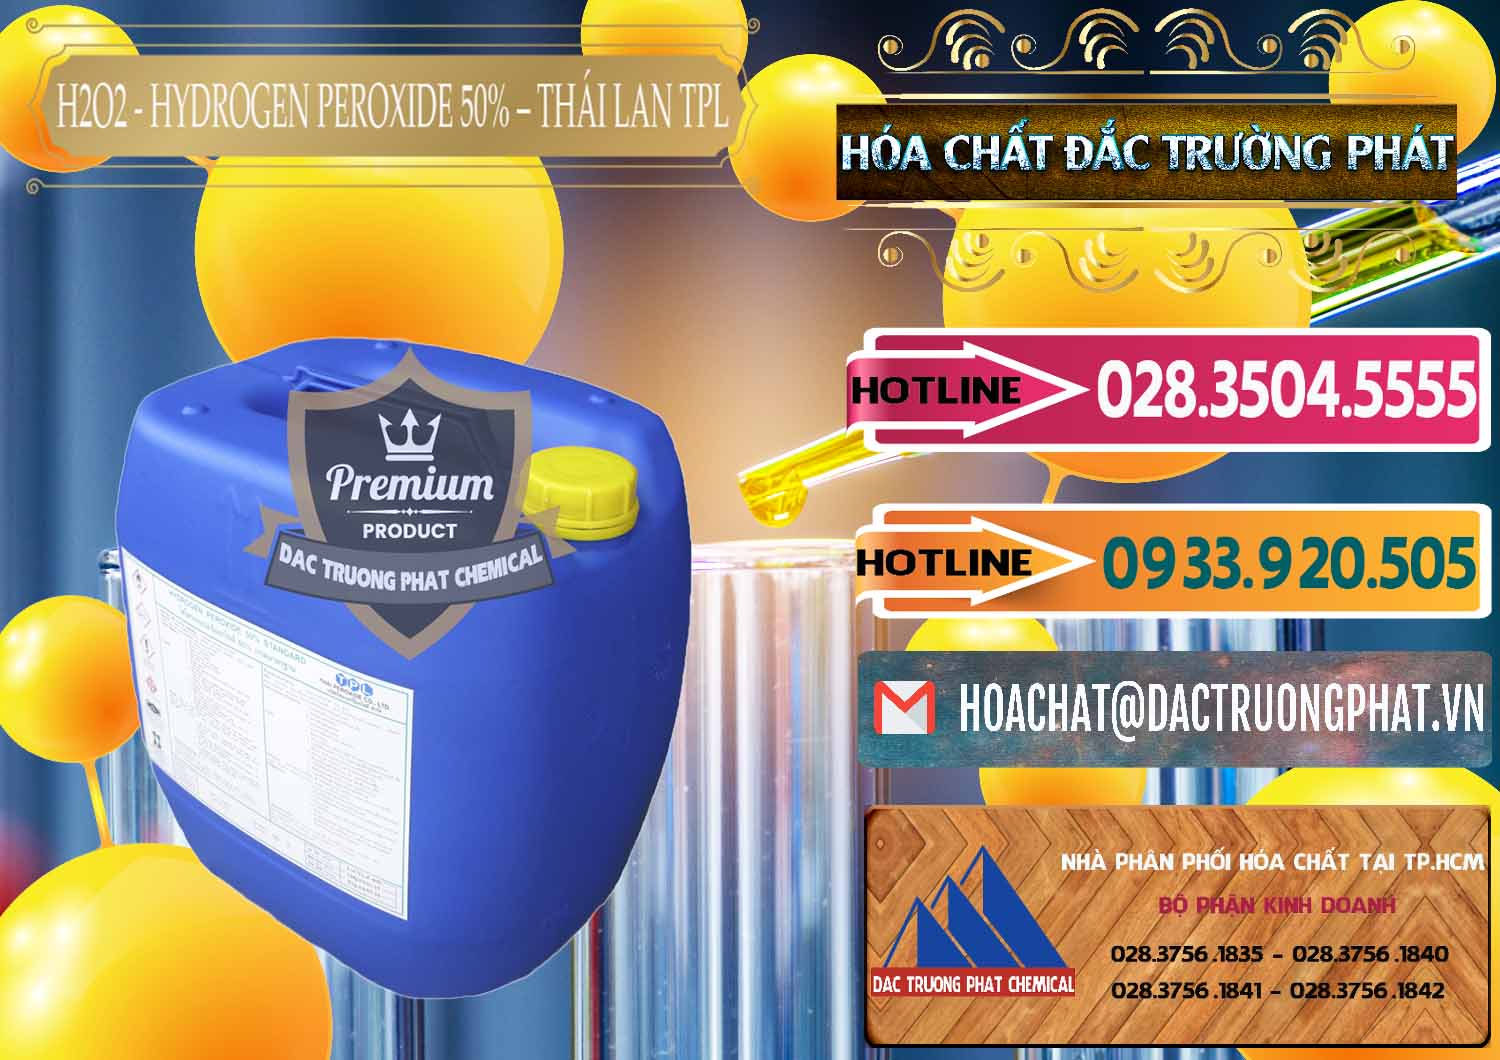 Đơn vị chuyên bán & cung cấp H2O2 - Hydrogen Peroxide 50% Thái Lan TPL - 0076 - Nơi chuyên nhập khẩu ( phân phối ) hóa chất tại TP.HCM - dactruongphat.vn